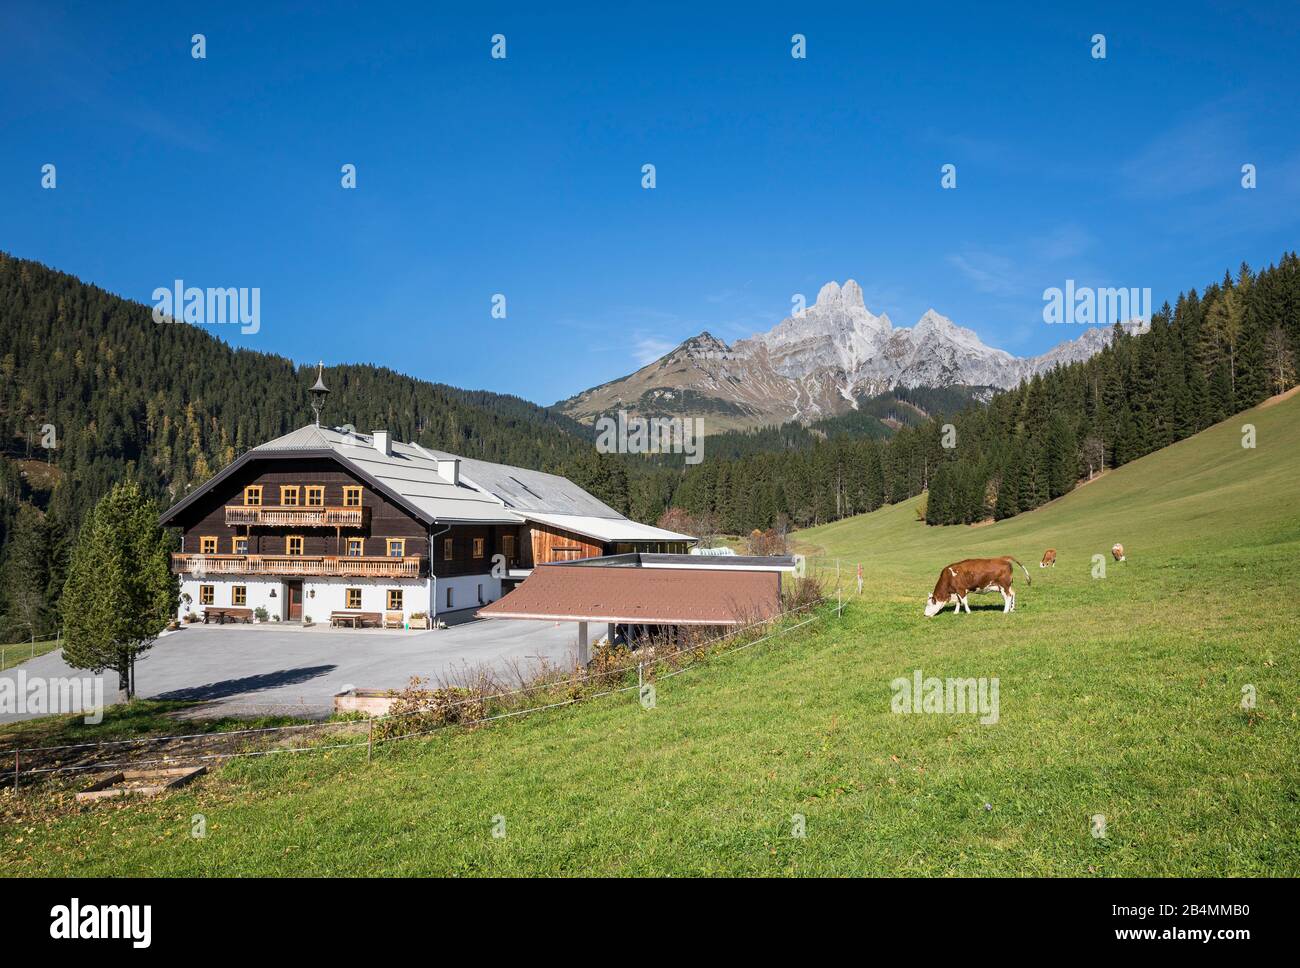 Bauernhof vor der Bischofsmütze (2458m), Filzmoos, Bezirk St. Johann im Pongau, Land Salzburg, Österreich Foto Stock